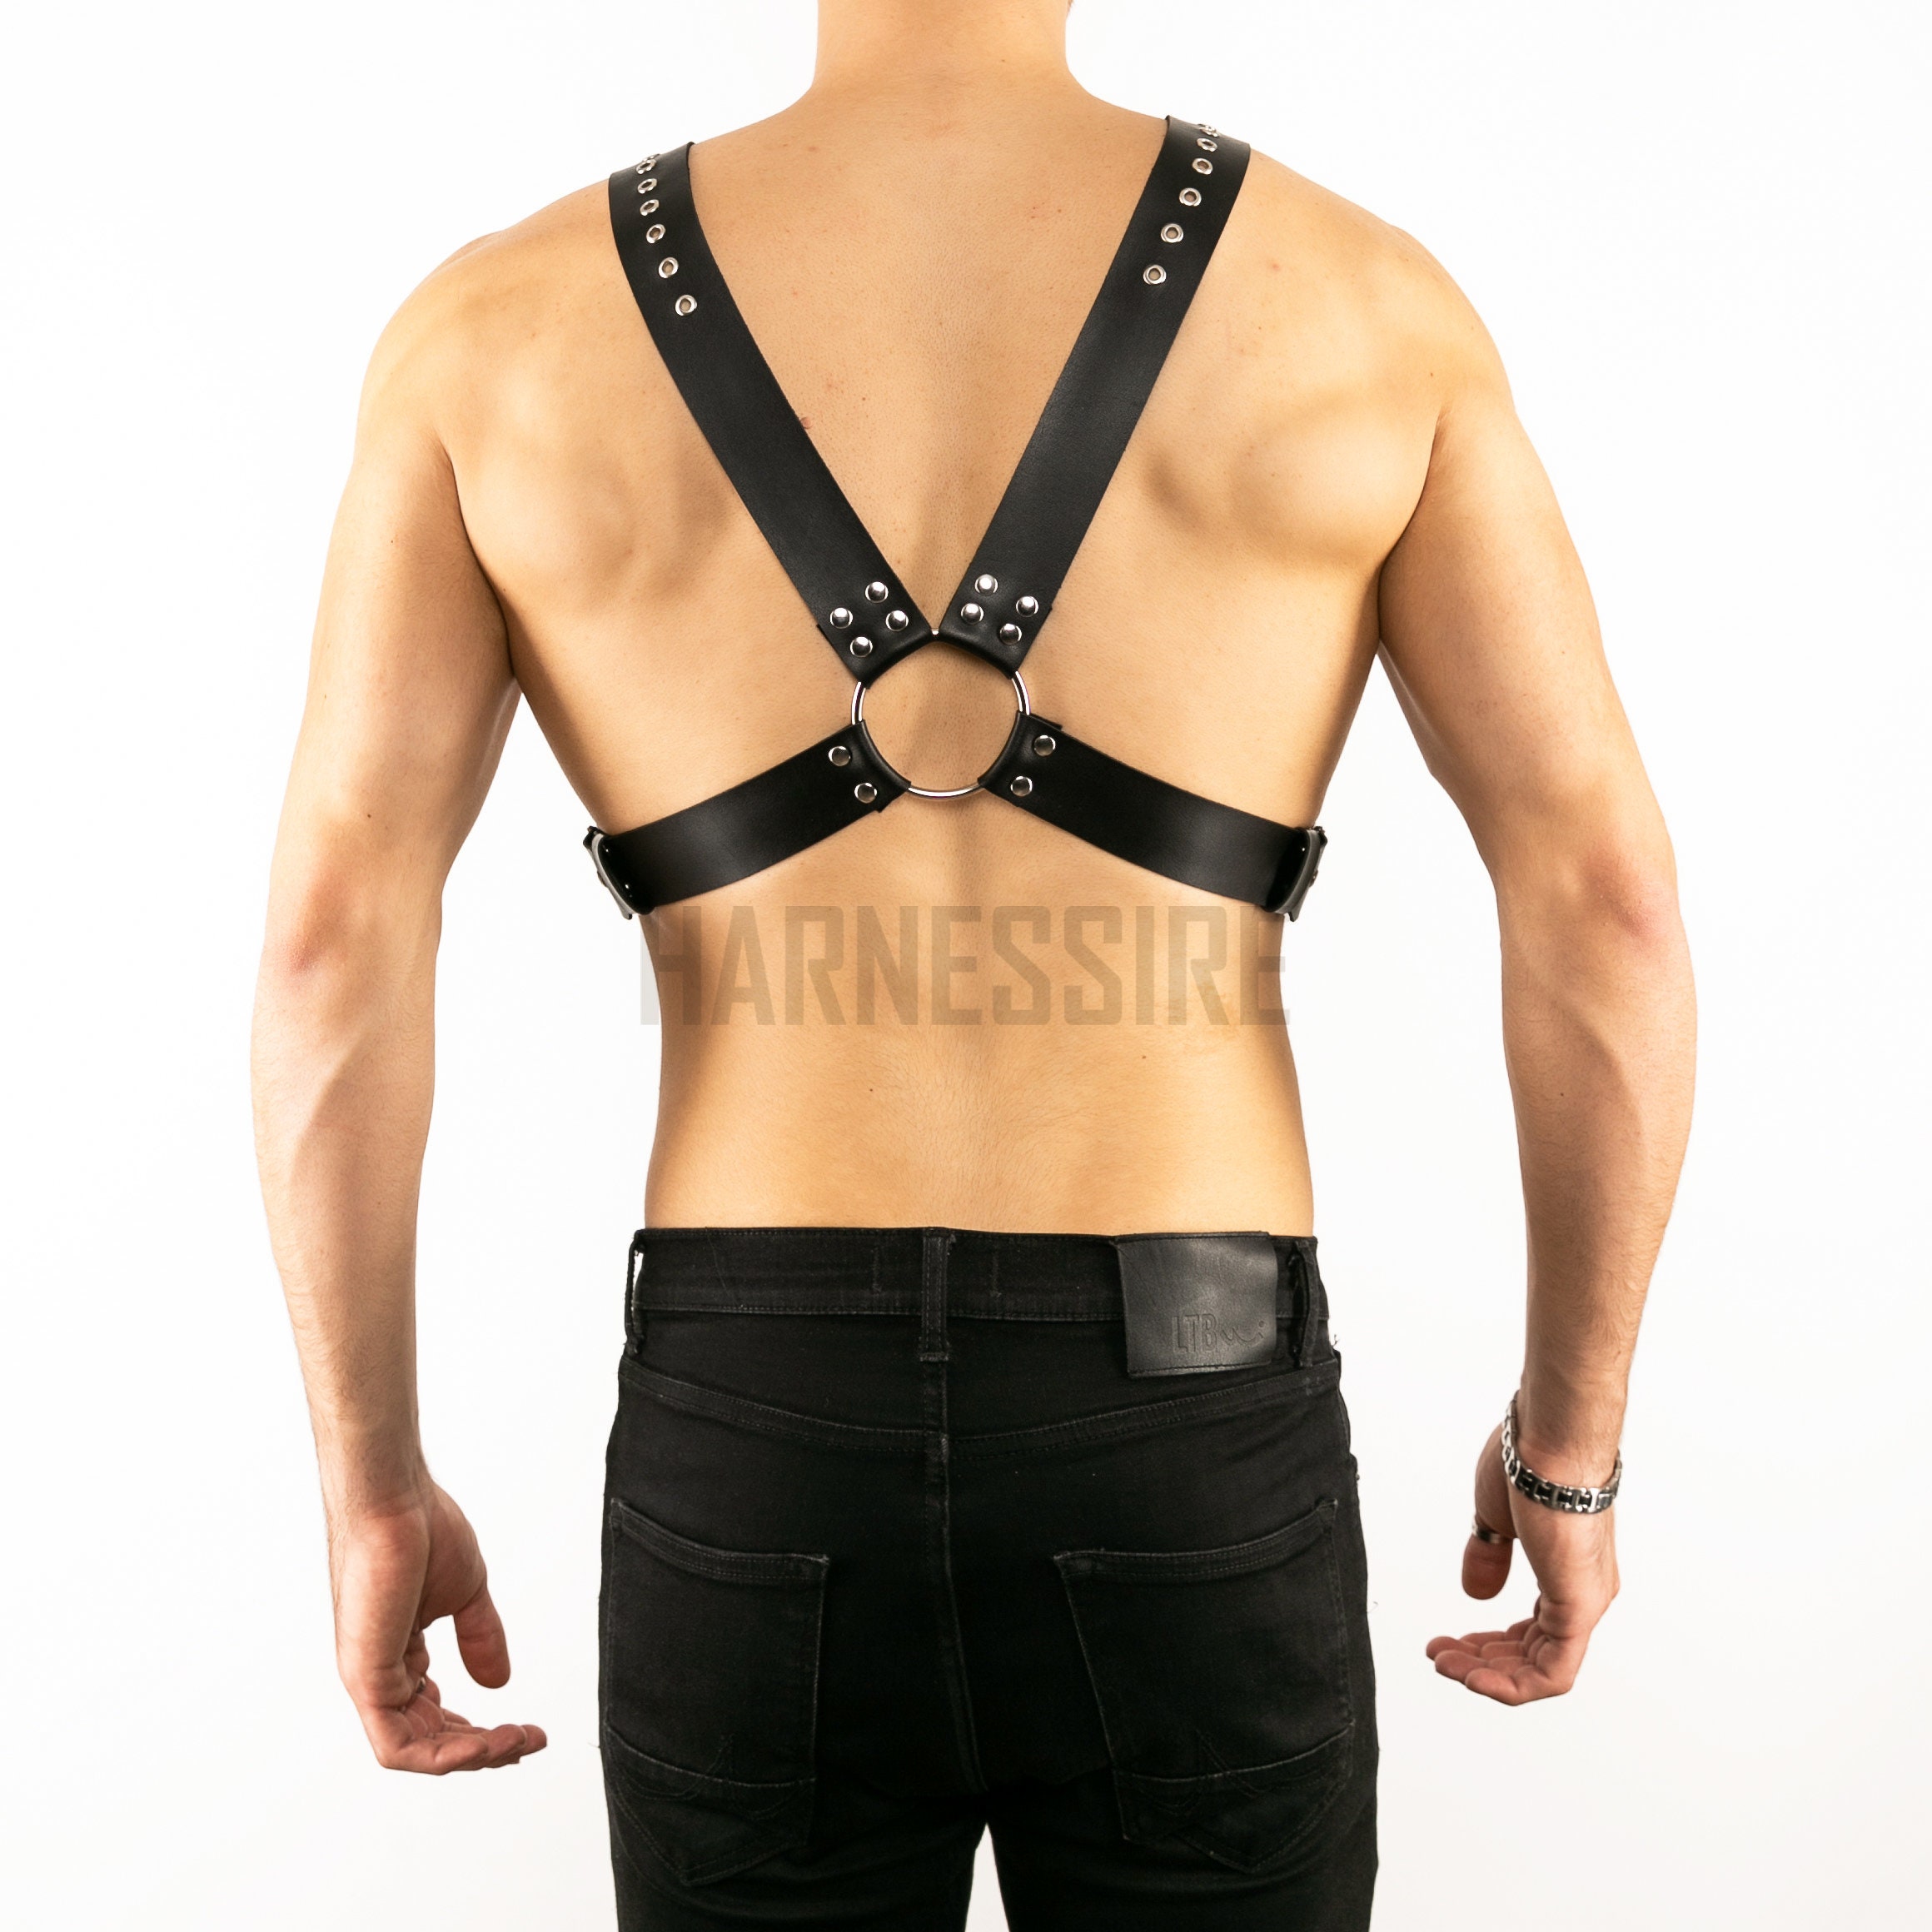 Arnés de cinturón de cintura para hombre / Arnés de gladiador para hombre  Arnés de pecho de cuero para hombre Cinturón de cintura bondage para hombre  Equipo BDSM para hombre Regalo para